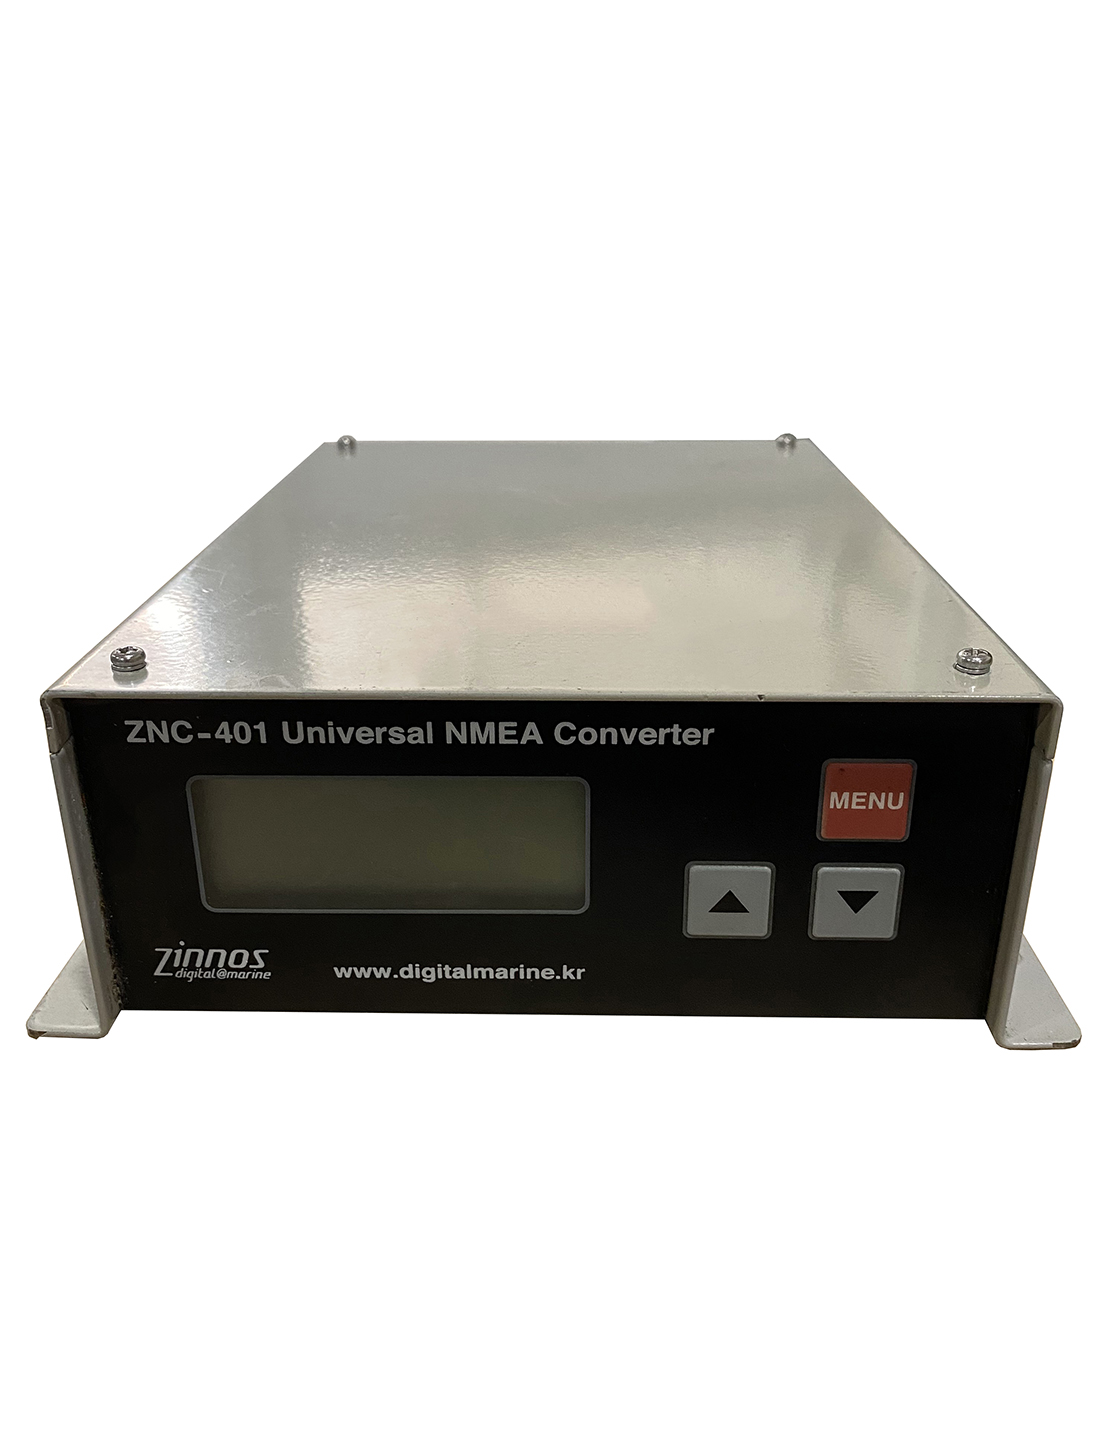 NMEA Converter ZNC-401